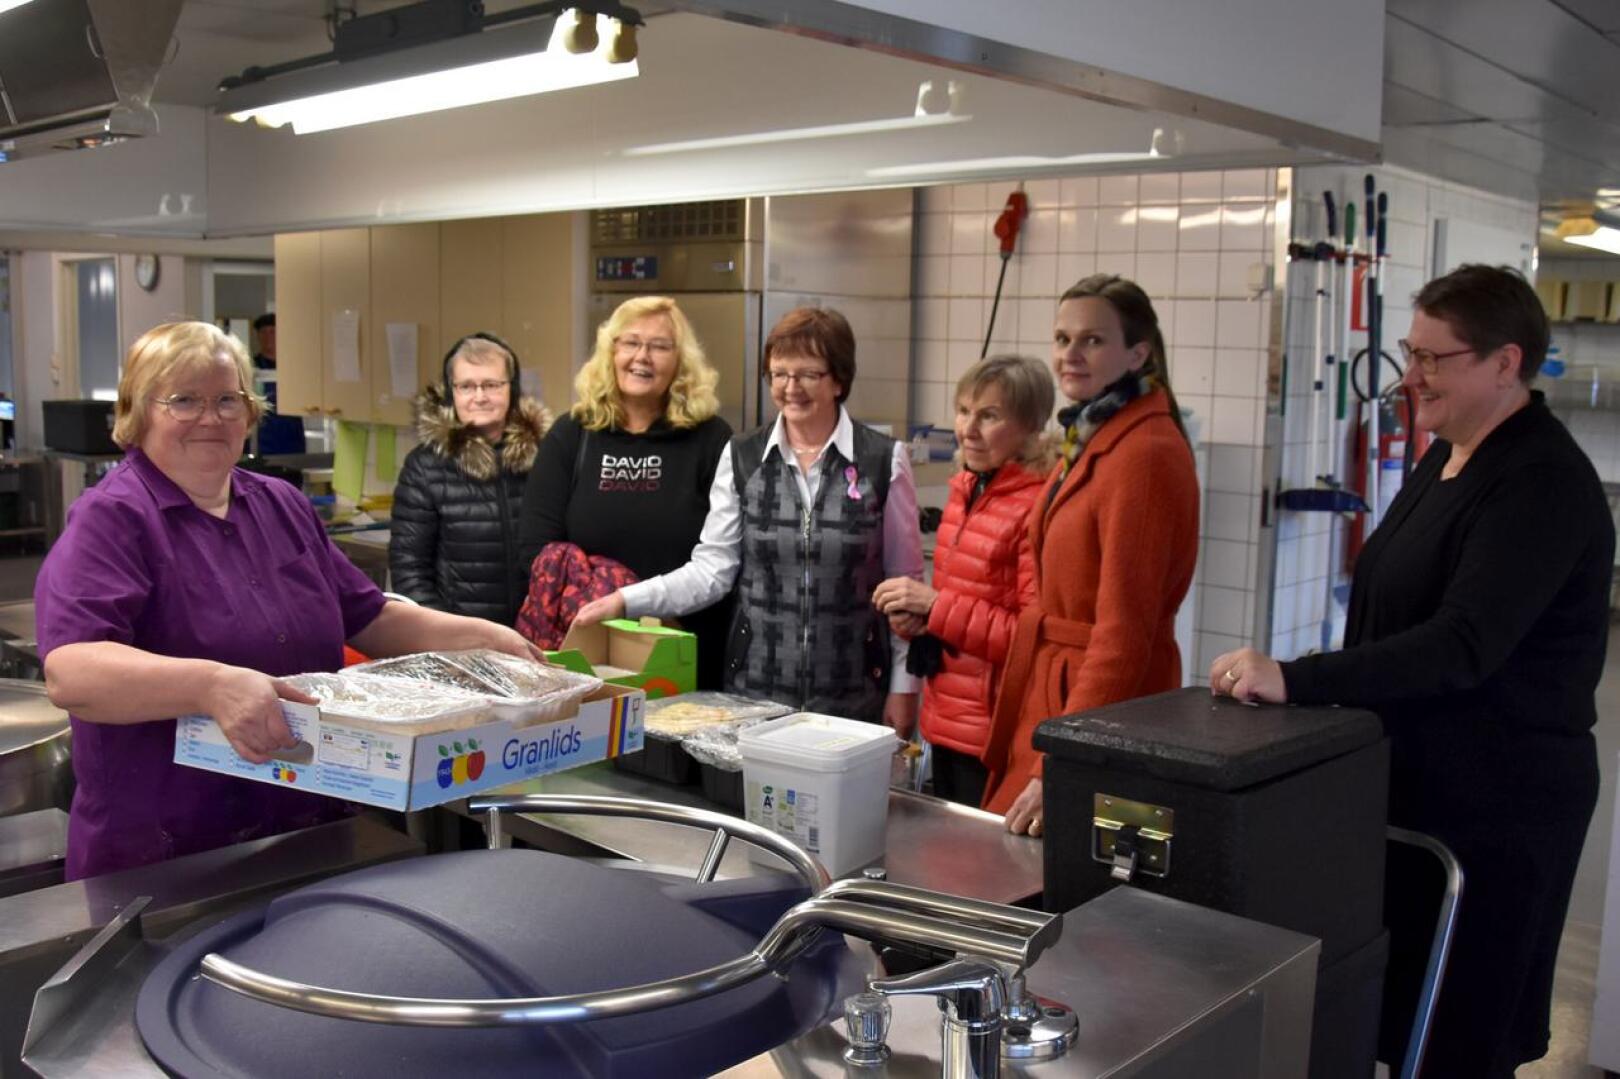 Ruoka-apua. Mervi Kangasniemi (vasemmalla) antamassa keittiöltä hävikkiruokaa, jota ovat hakemassa vasemmalta Laila Ylitalo, Hannele Ilola, Anja Törmä, Pirkko Päivärinta ja Ulla-Maija Karvonen. Sirpa Maliniemi oikealla.